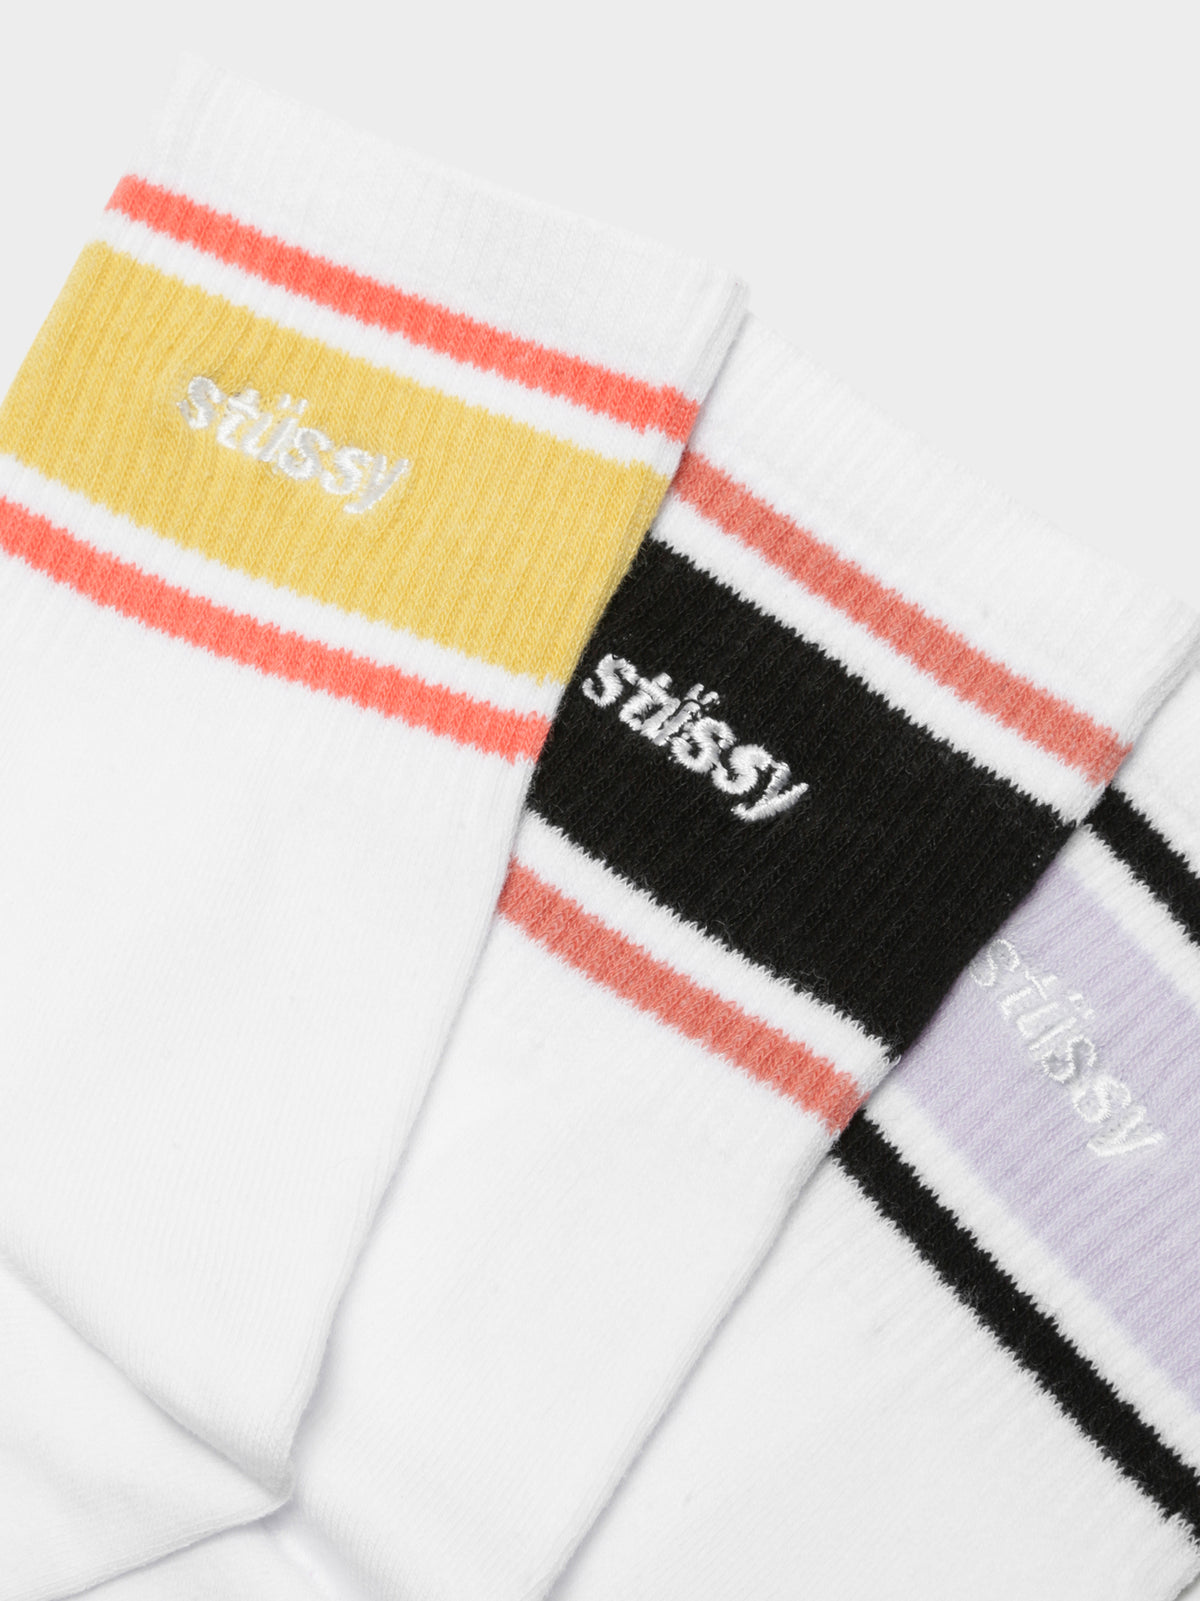 3 Pairs of Italic Sport Socks in White